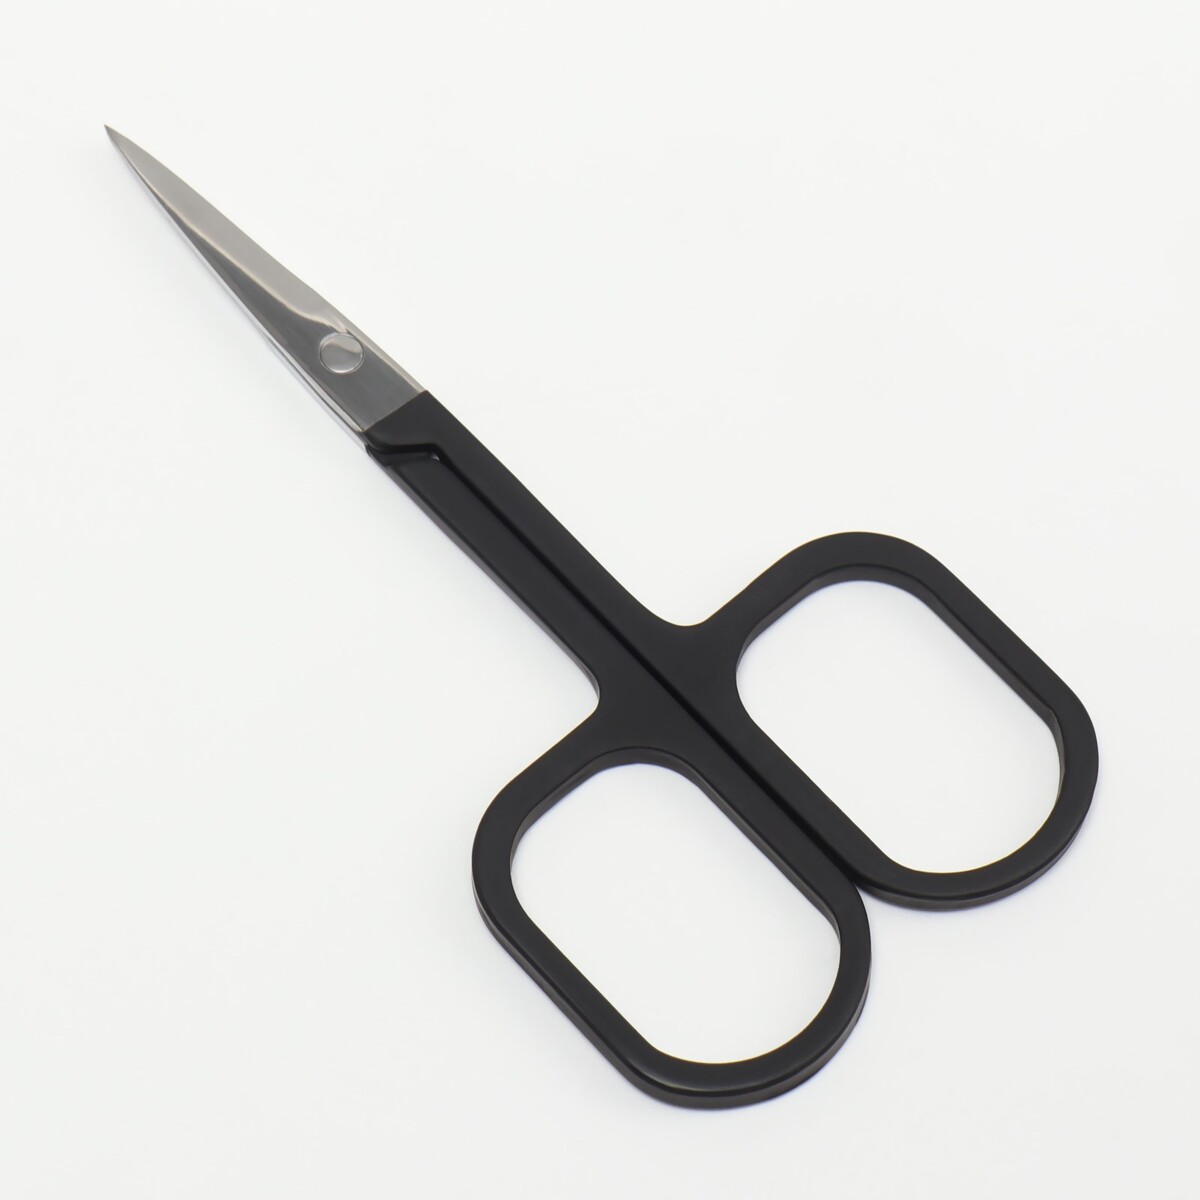 Ножницы маникюрные, узкие, прямые, с прорезиненными ручками, 9 см, цвет серебристый/черный пинцет в форме ножниц прорезиненные ручки 8 см на блистере серебристый